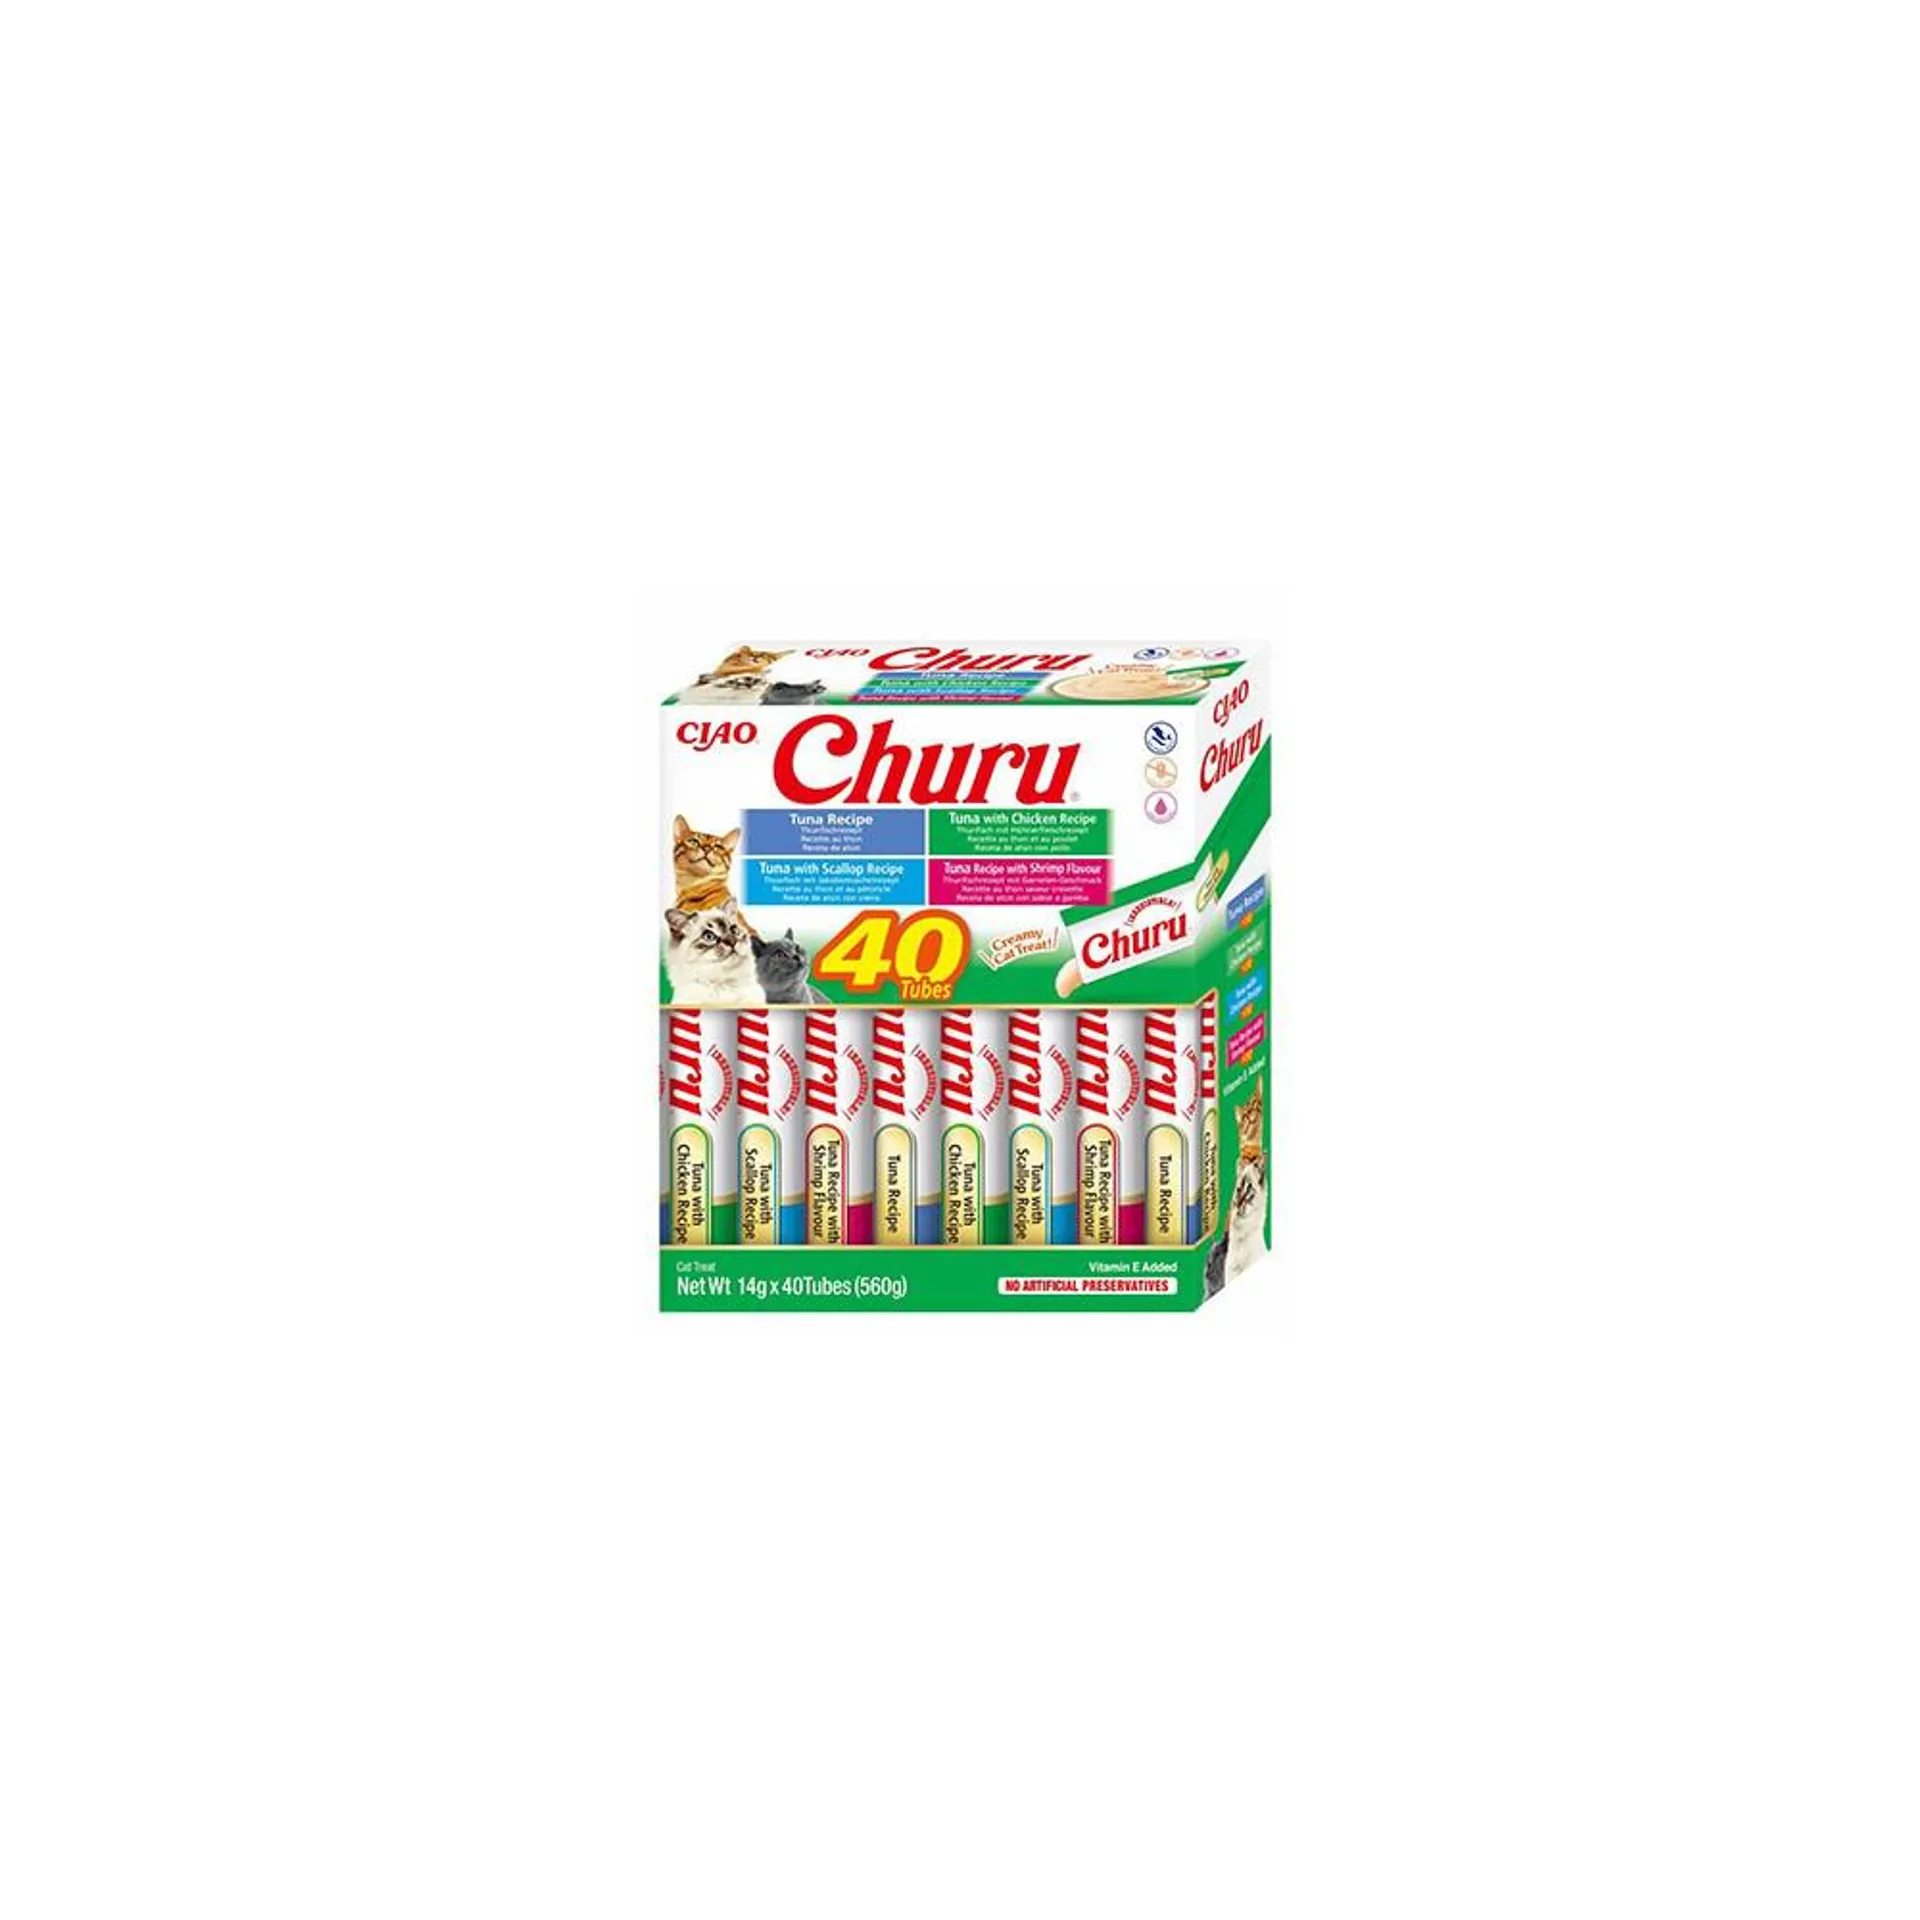 Churu Box Variedades de Atún. 40 Unds.